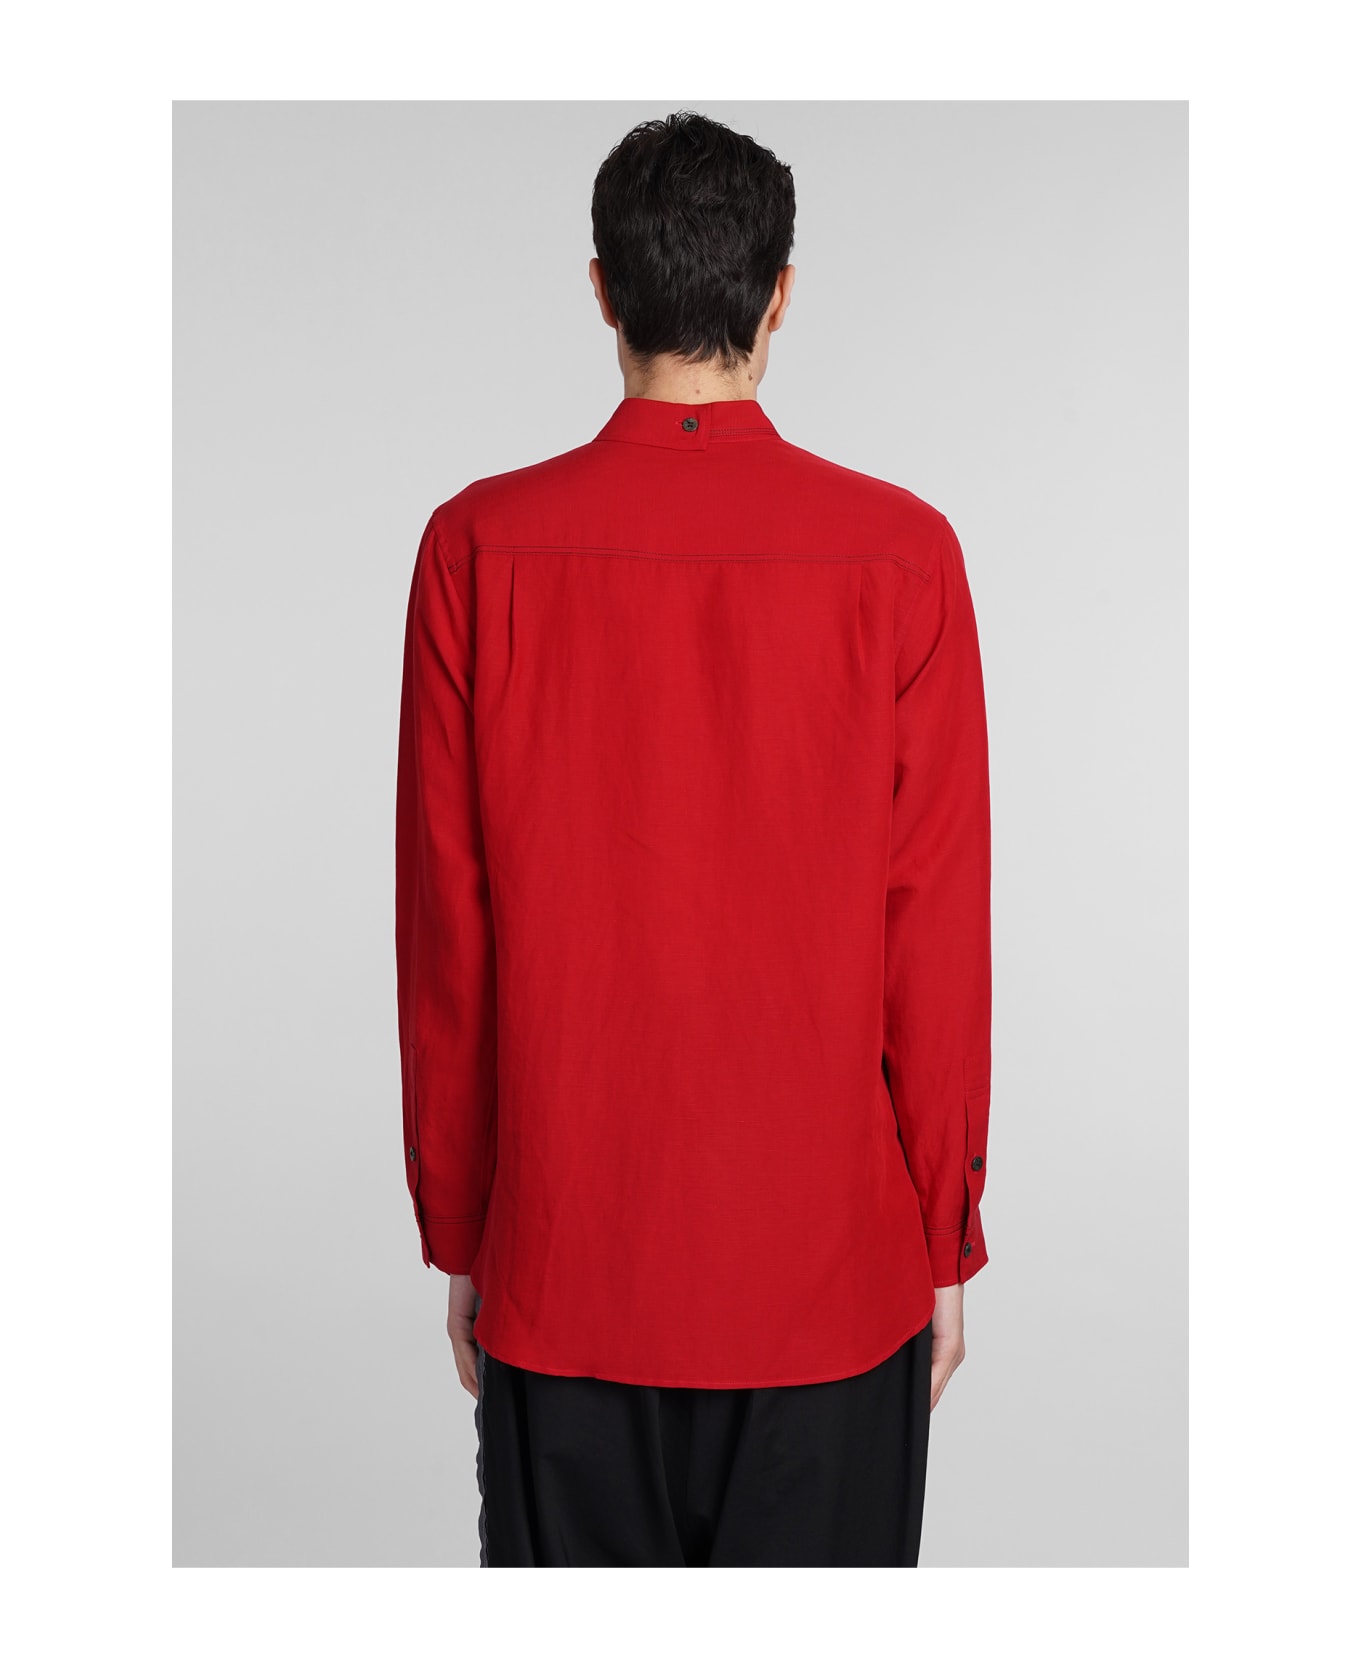 Yohji Yamamoto Shirt In Red Linen - red